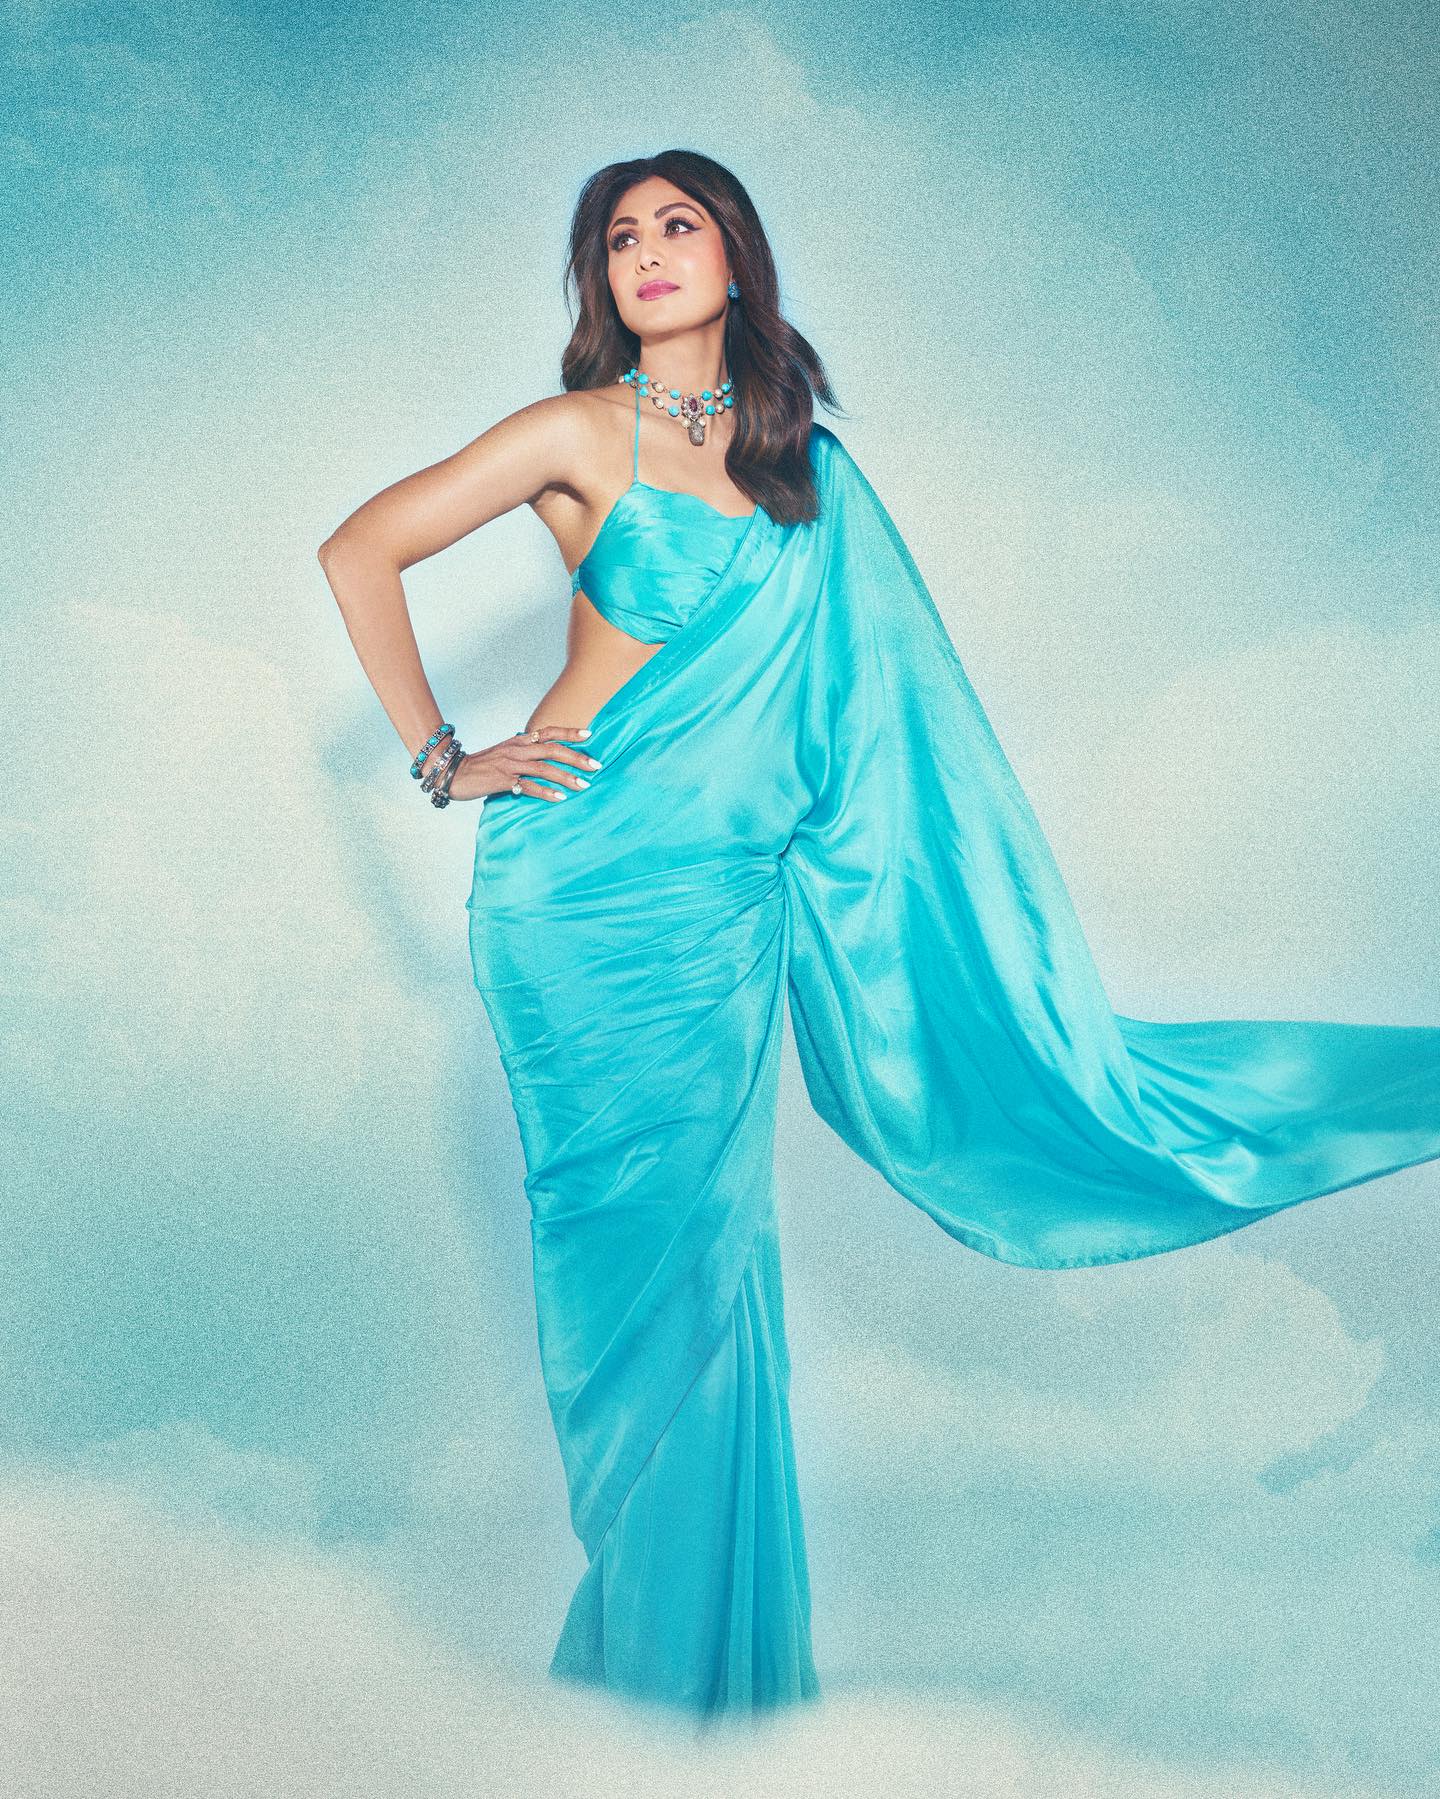 शिल्पा शेट्टी का आकर्षक नीली साड़ी लुक रंग और शिल्प कौशल का एक भव्य तालमेल है।